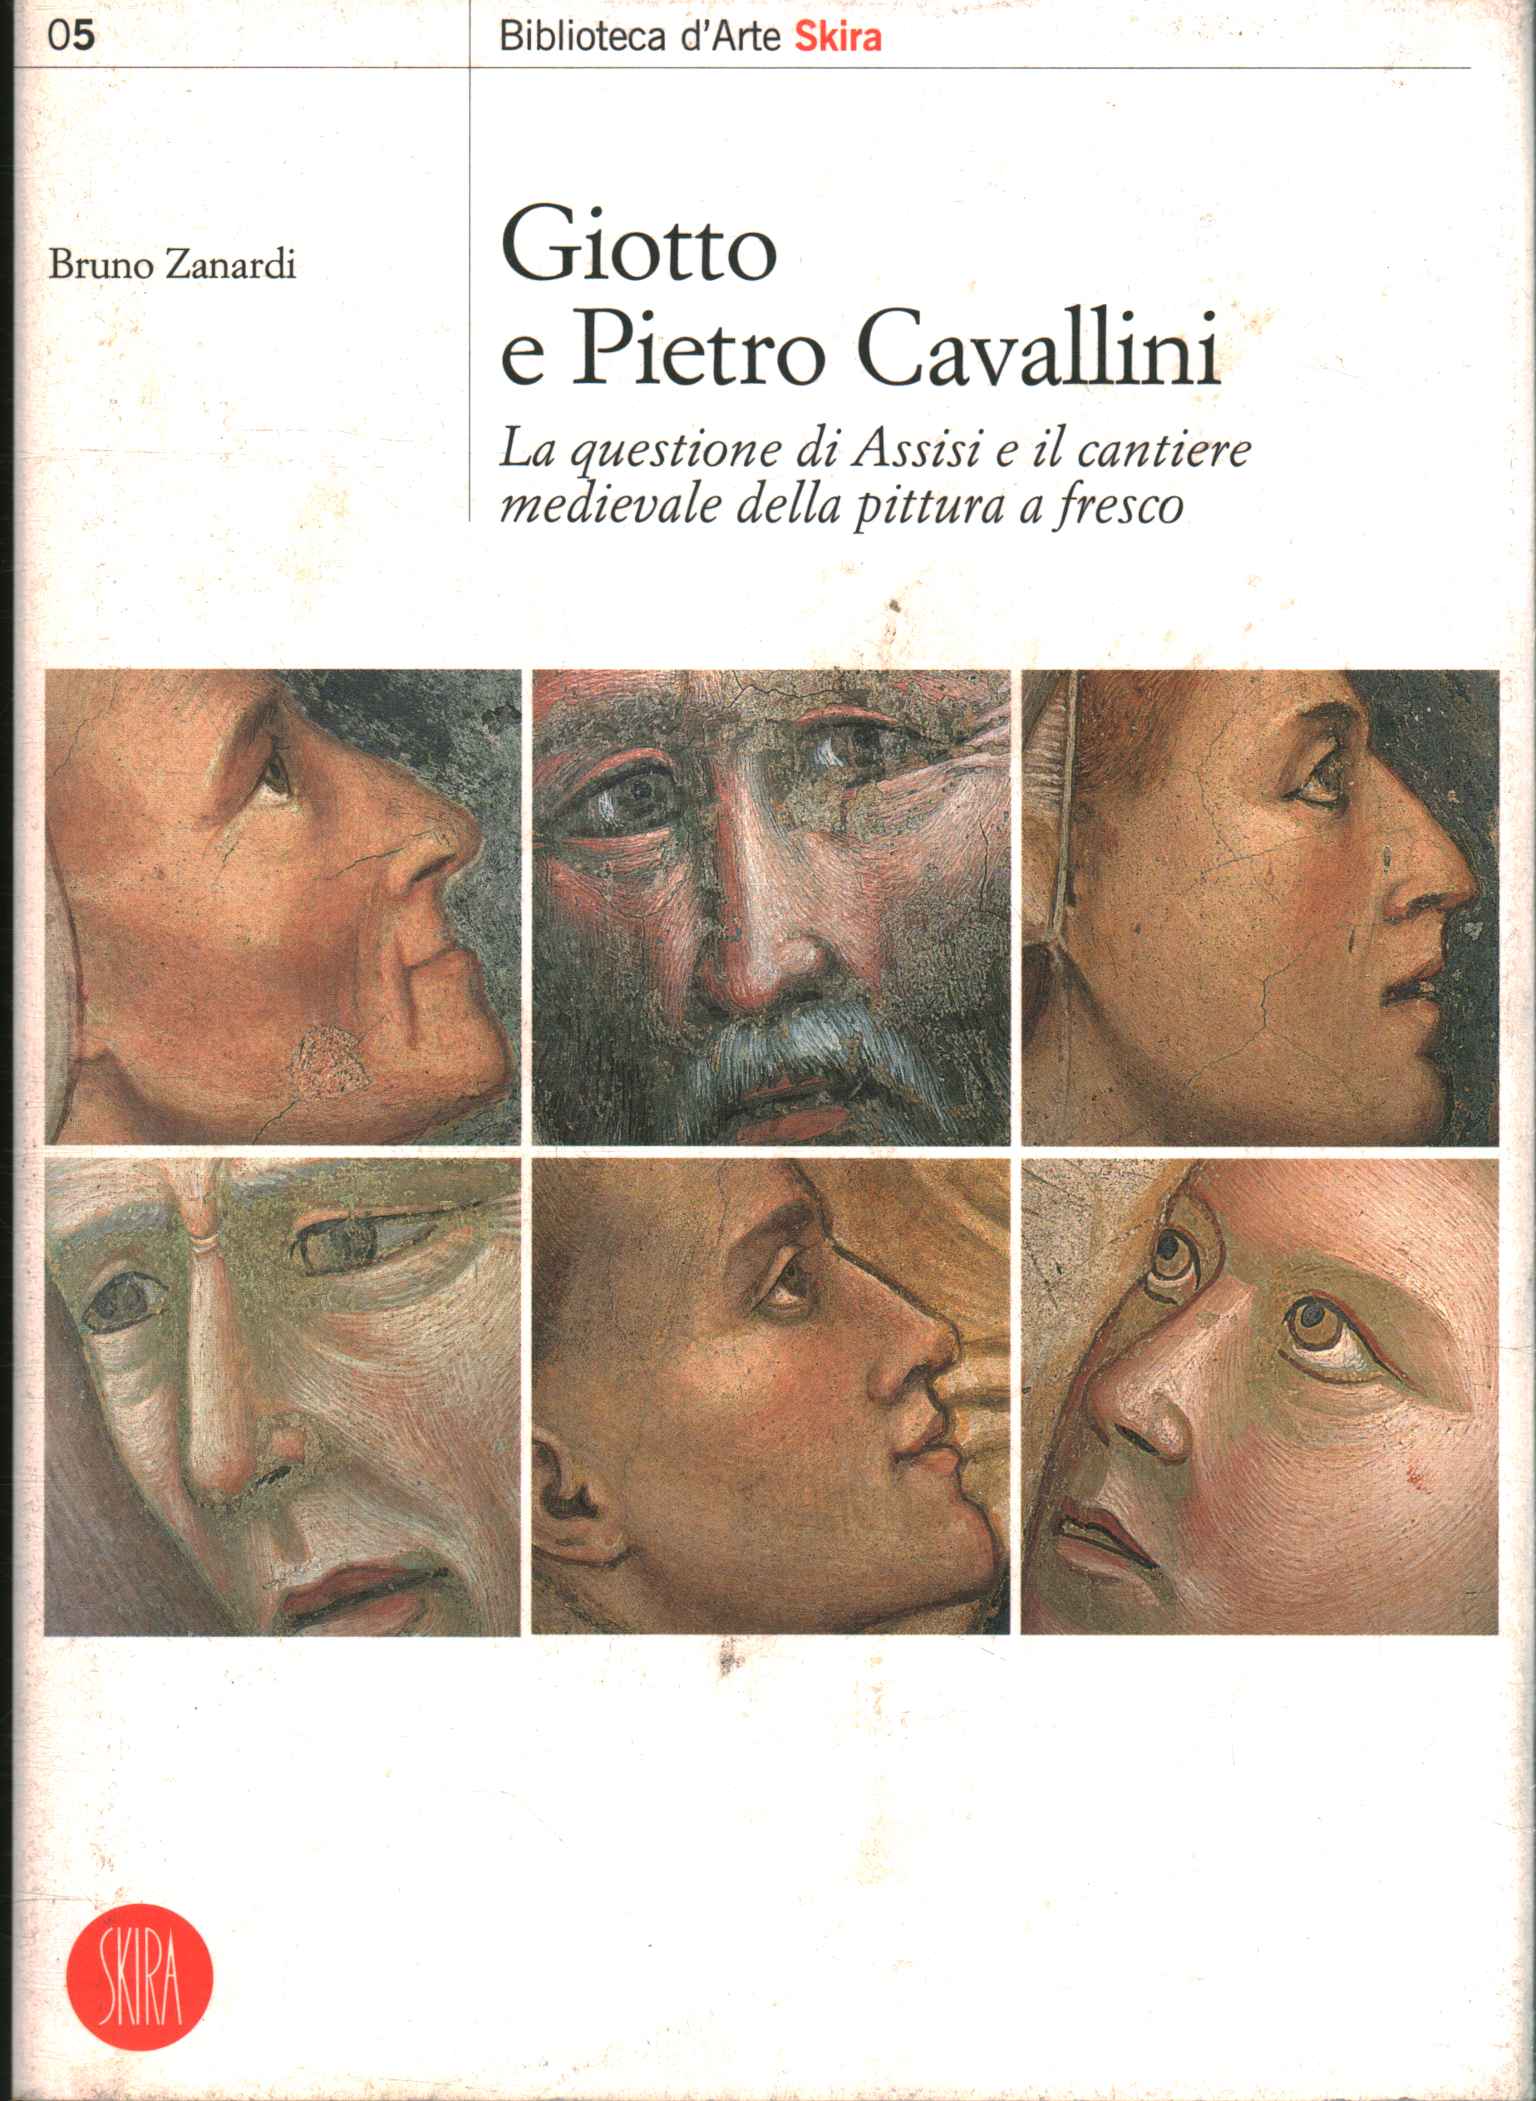 Giotto et Pietro Cavallini